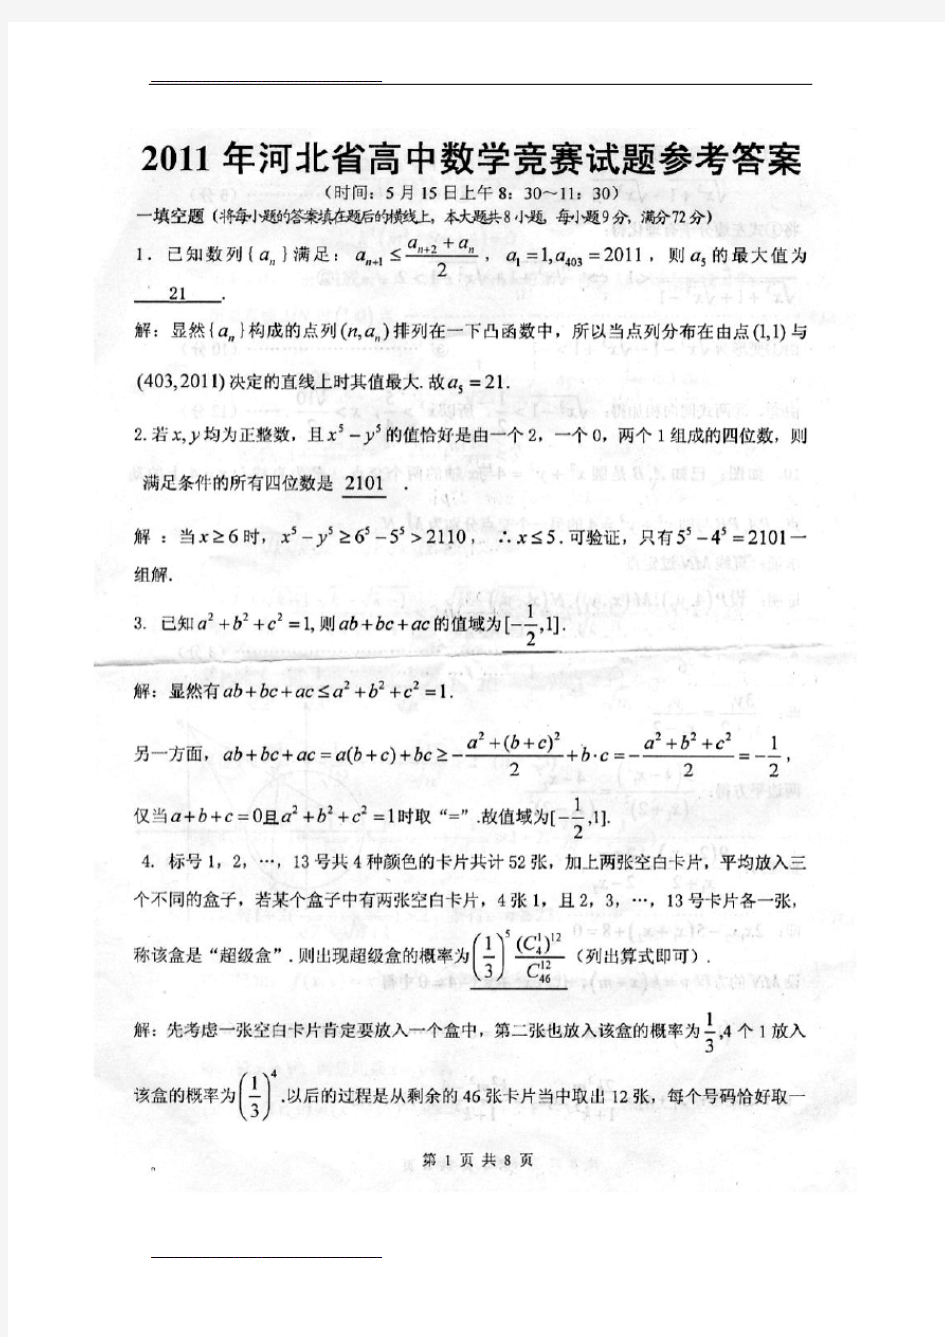 【精品】河北高中数学竞赛初赛试题及答案